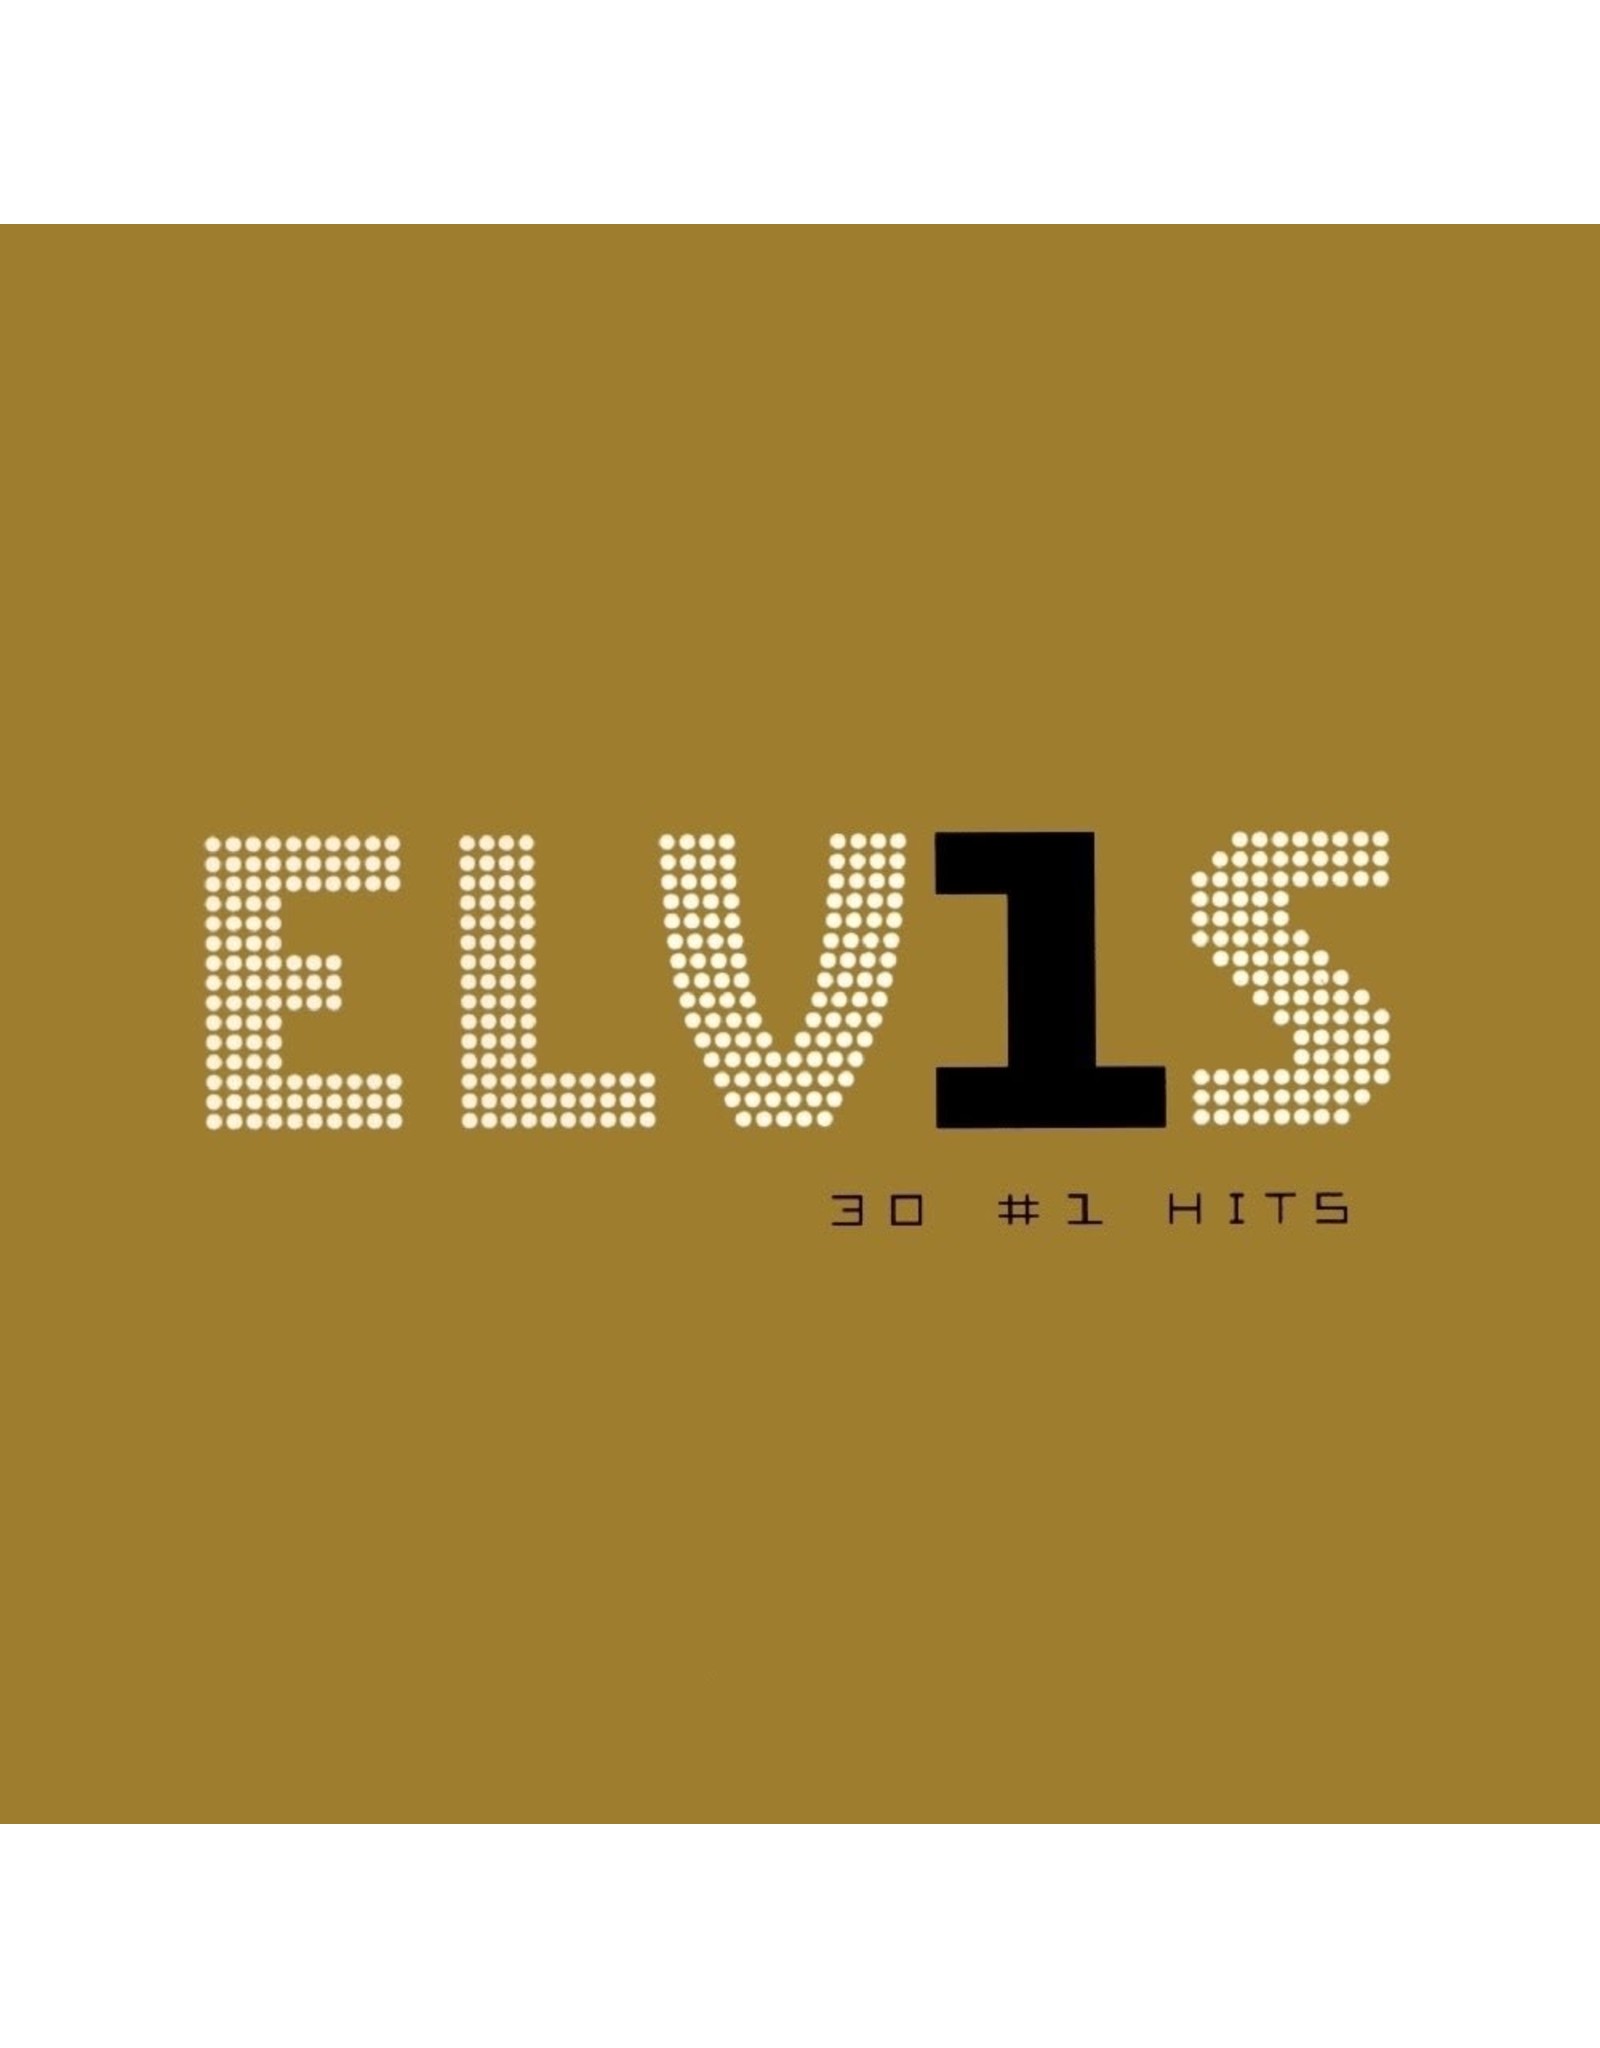 Elvis Presley - ELV1S: 30 #1 Hits